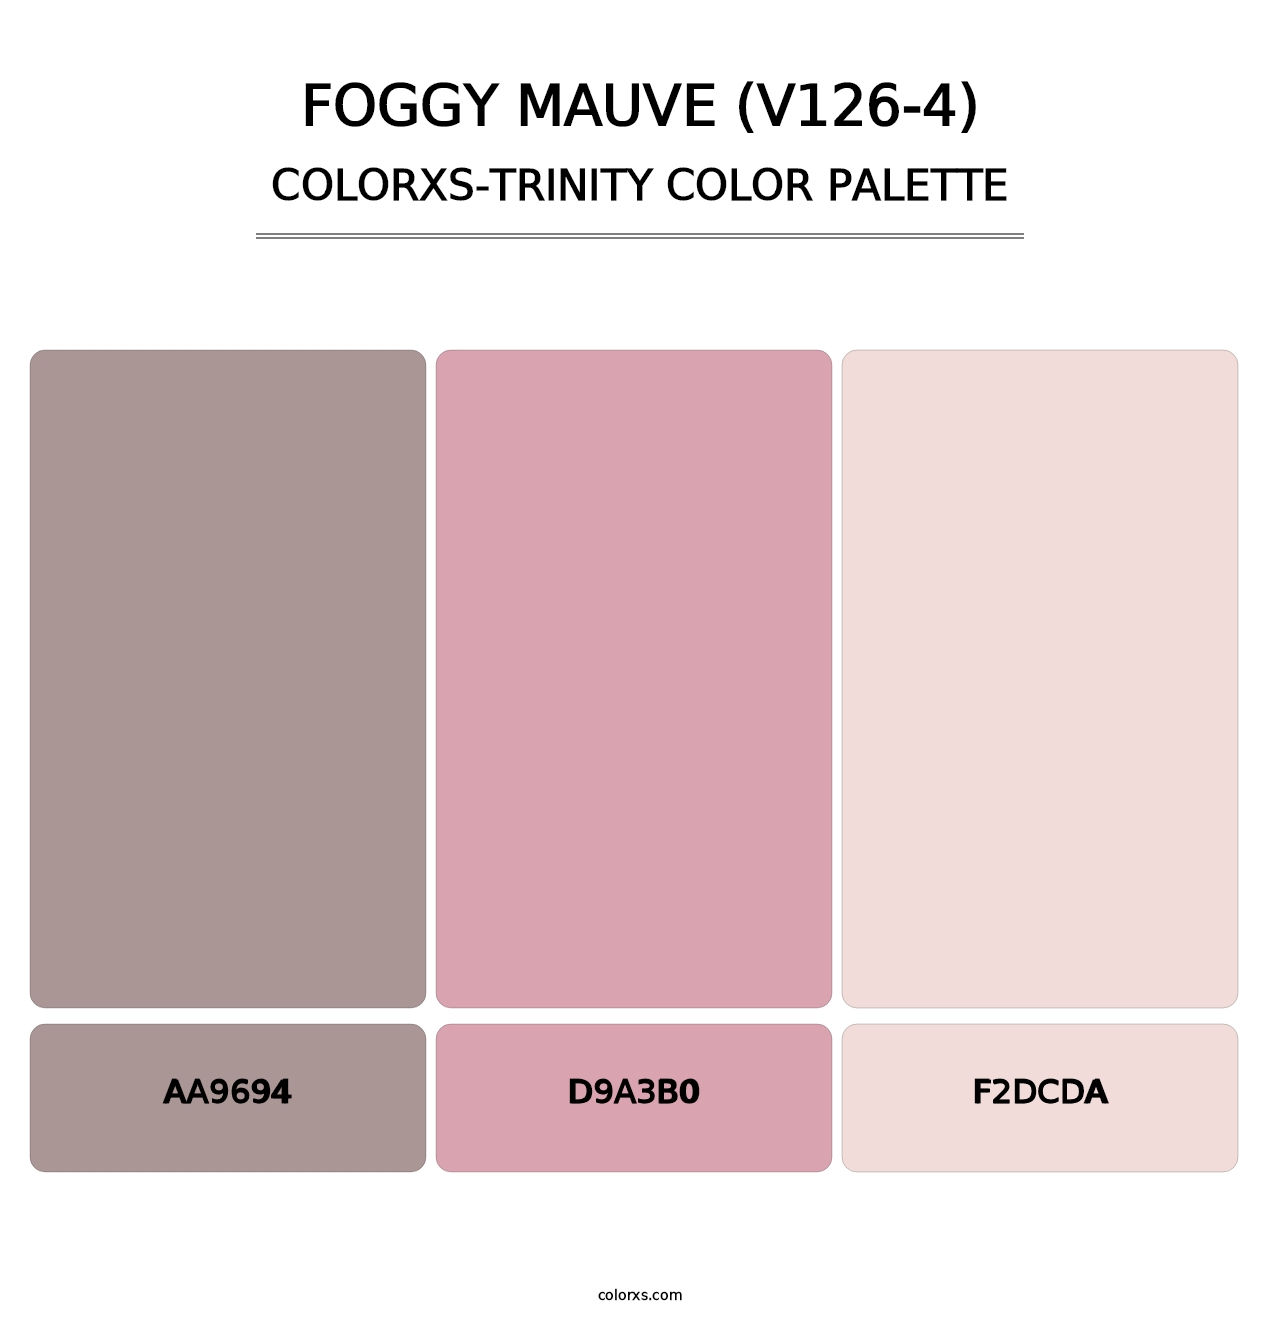 Foggy Mauve (V126-4) - Colorxs Trinity Palette